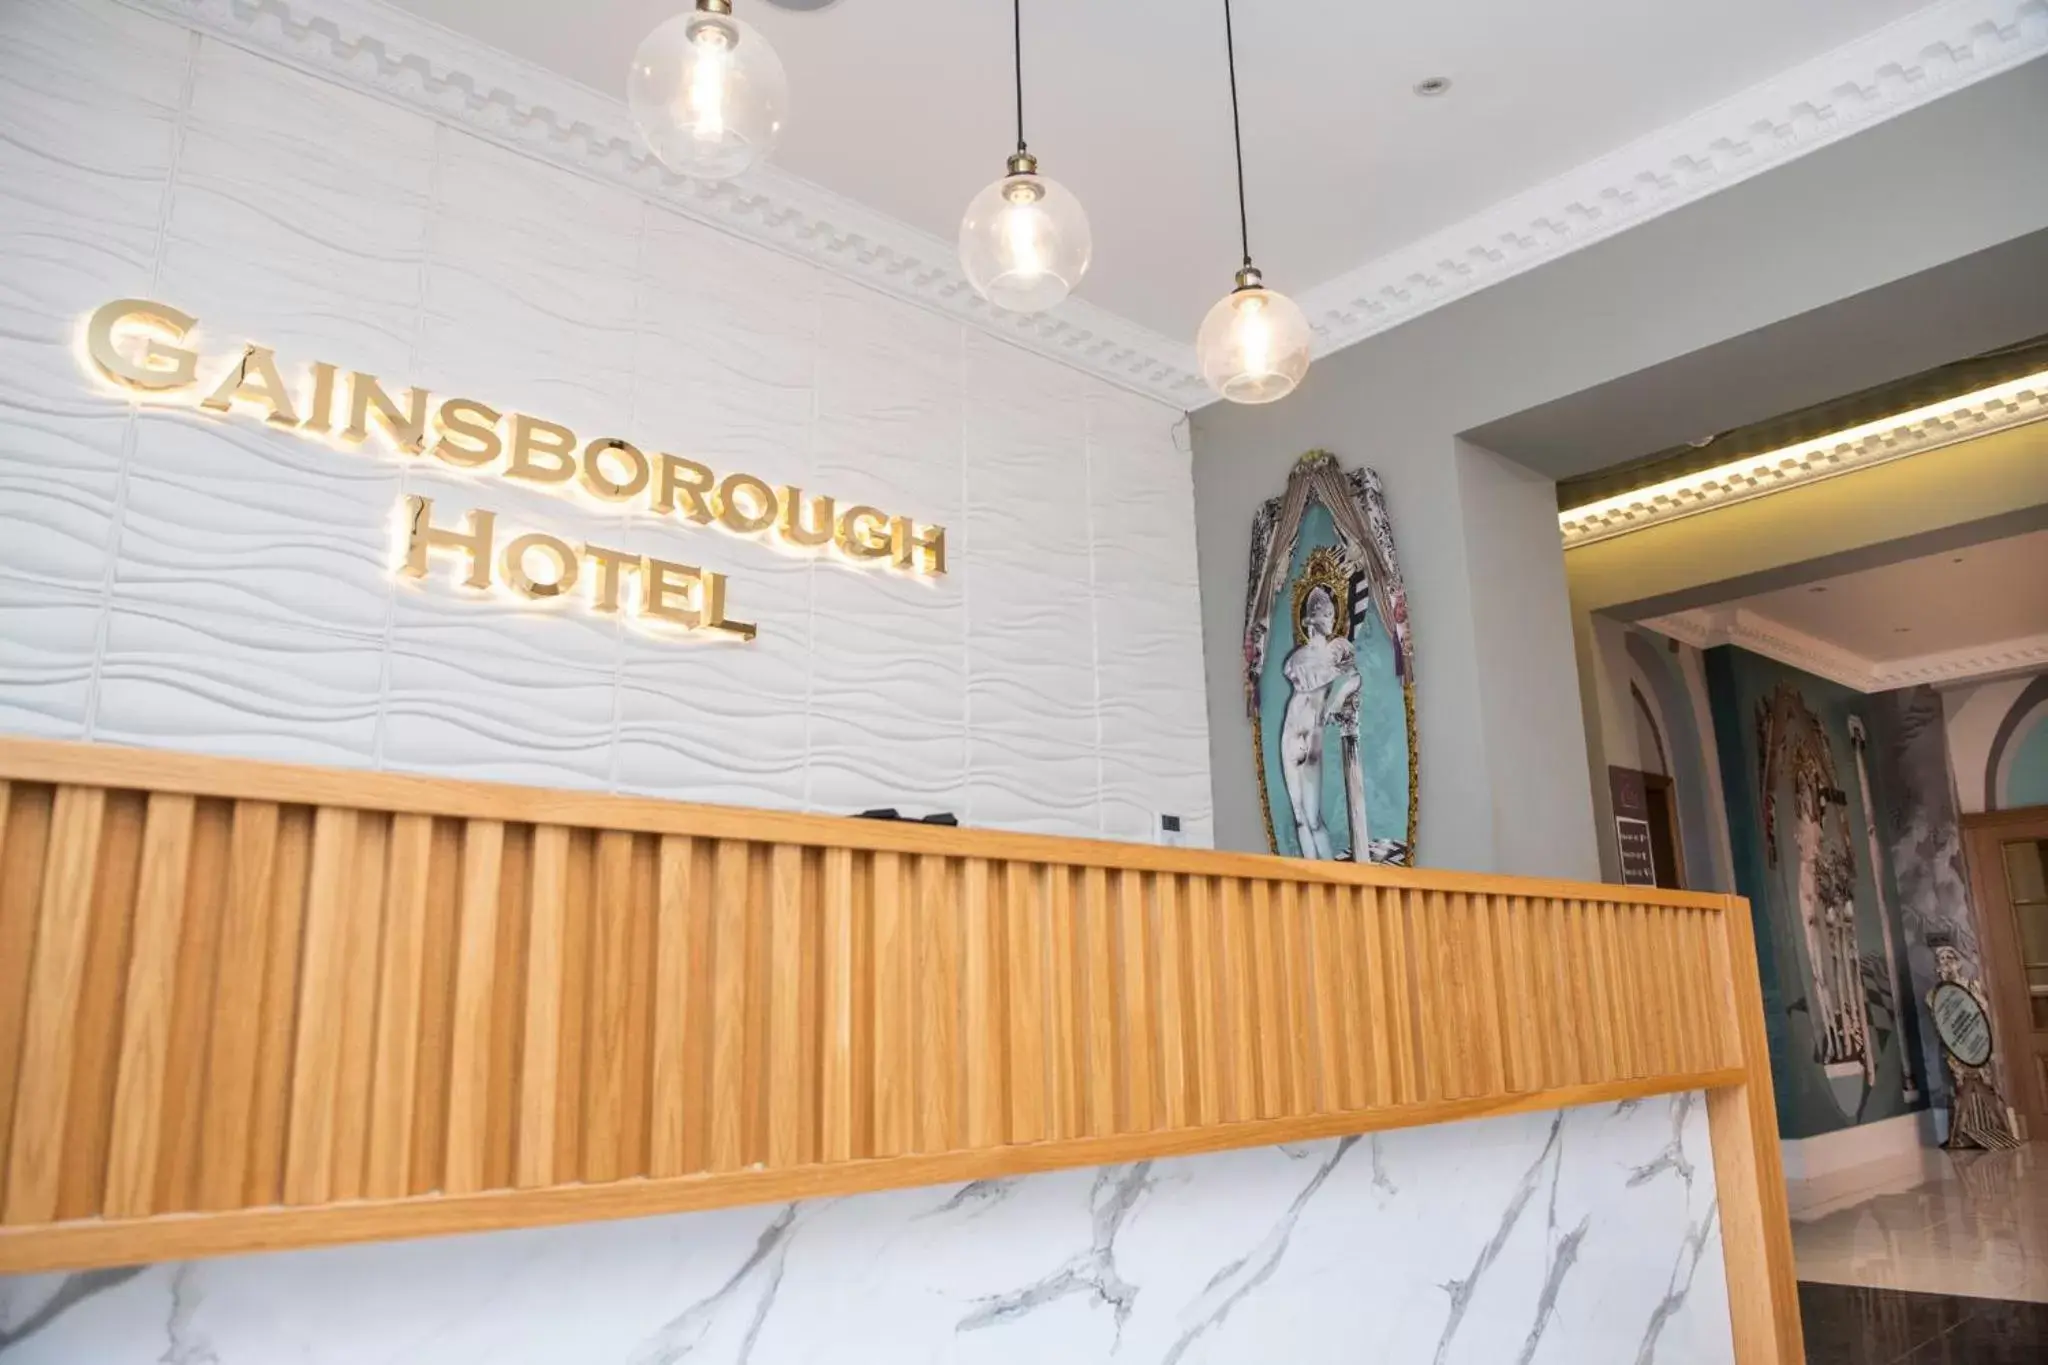 Lobby or reception, Lobby/Reception in Gainsborough Hotel